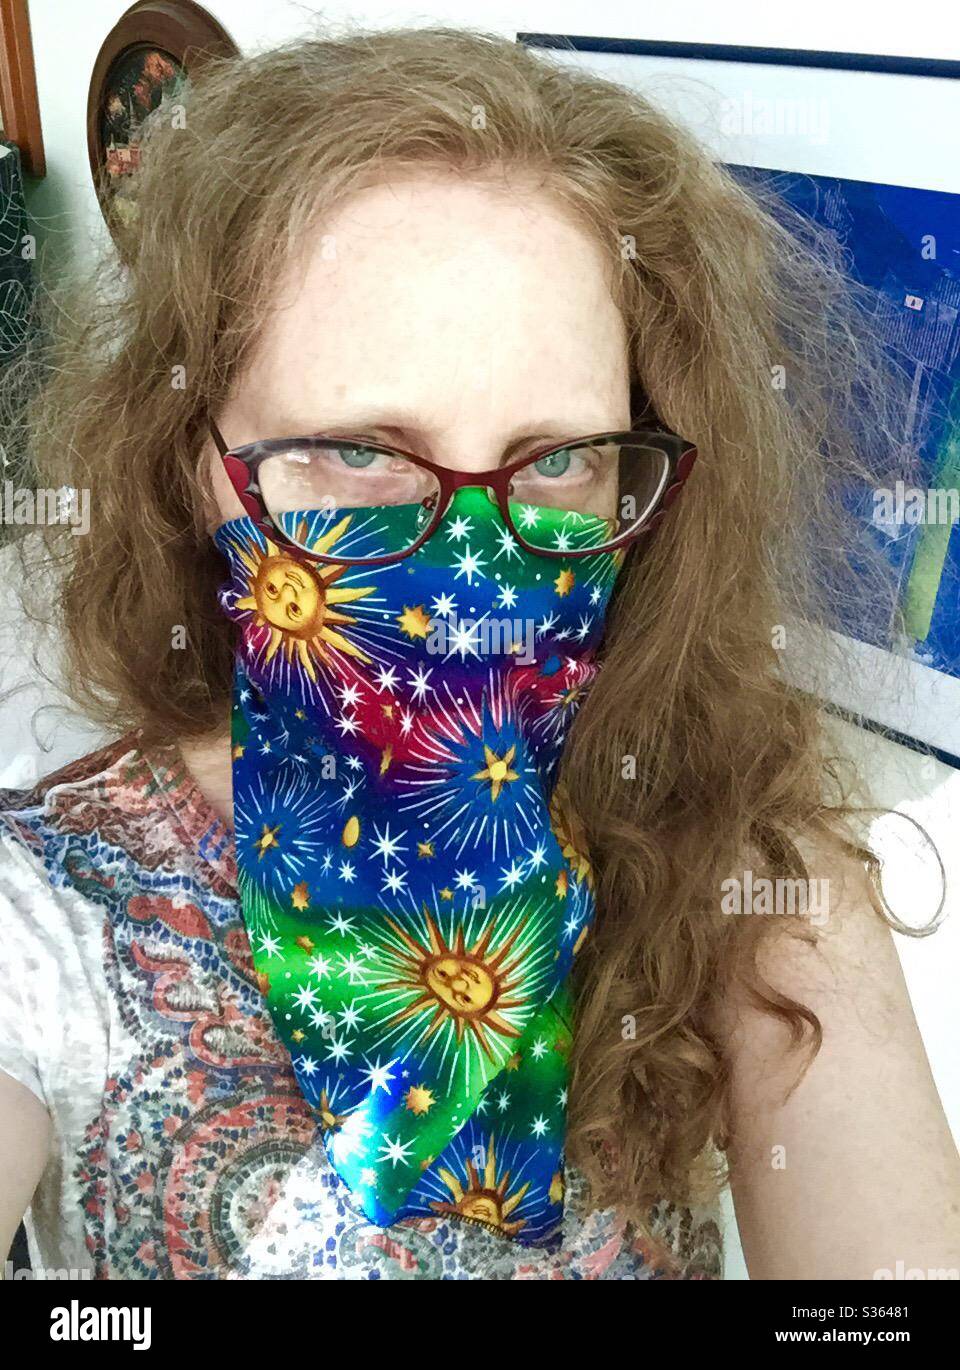 Rothaarige Frau mit Brille trägt ein ausgefallenes Taschentuch mit Sonne und Sternen als Maske, PSA, um vor der Übertragung des COVID19-Virus zu schützen. Stockfoto